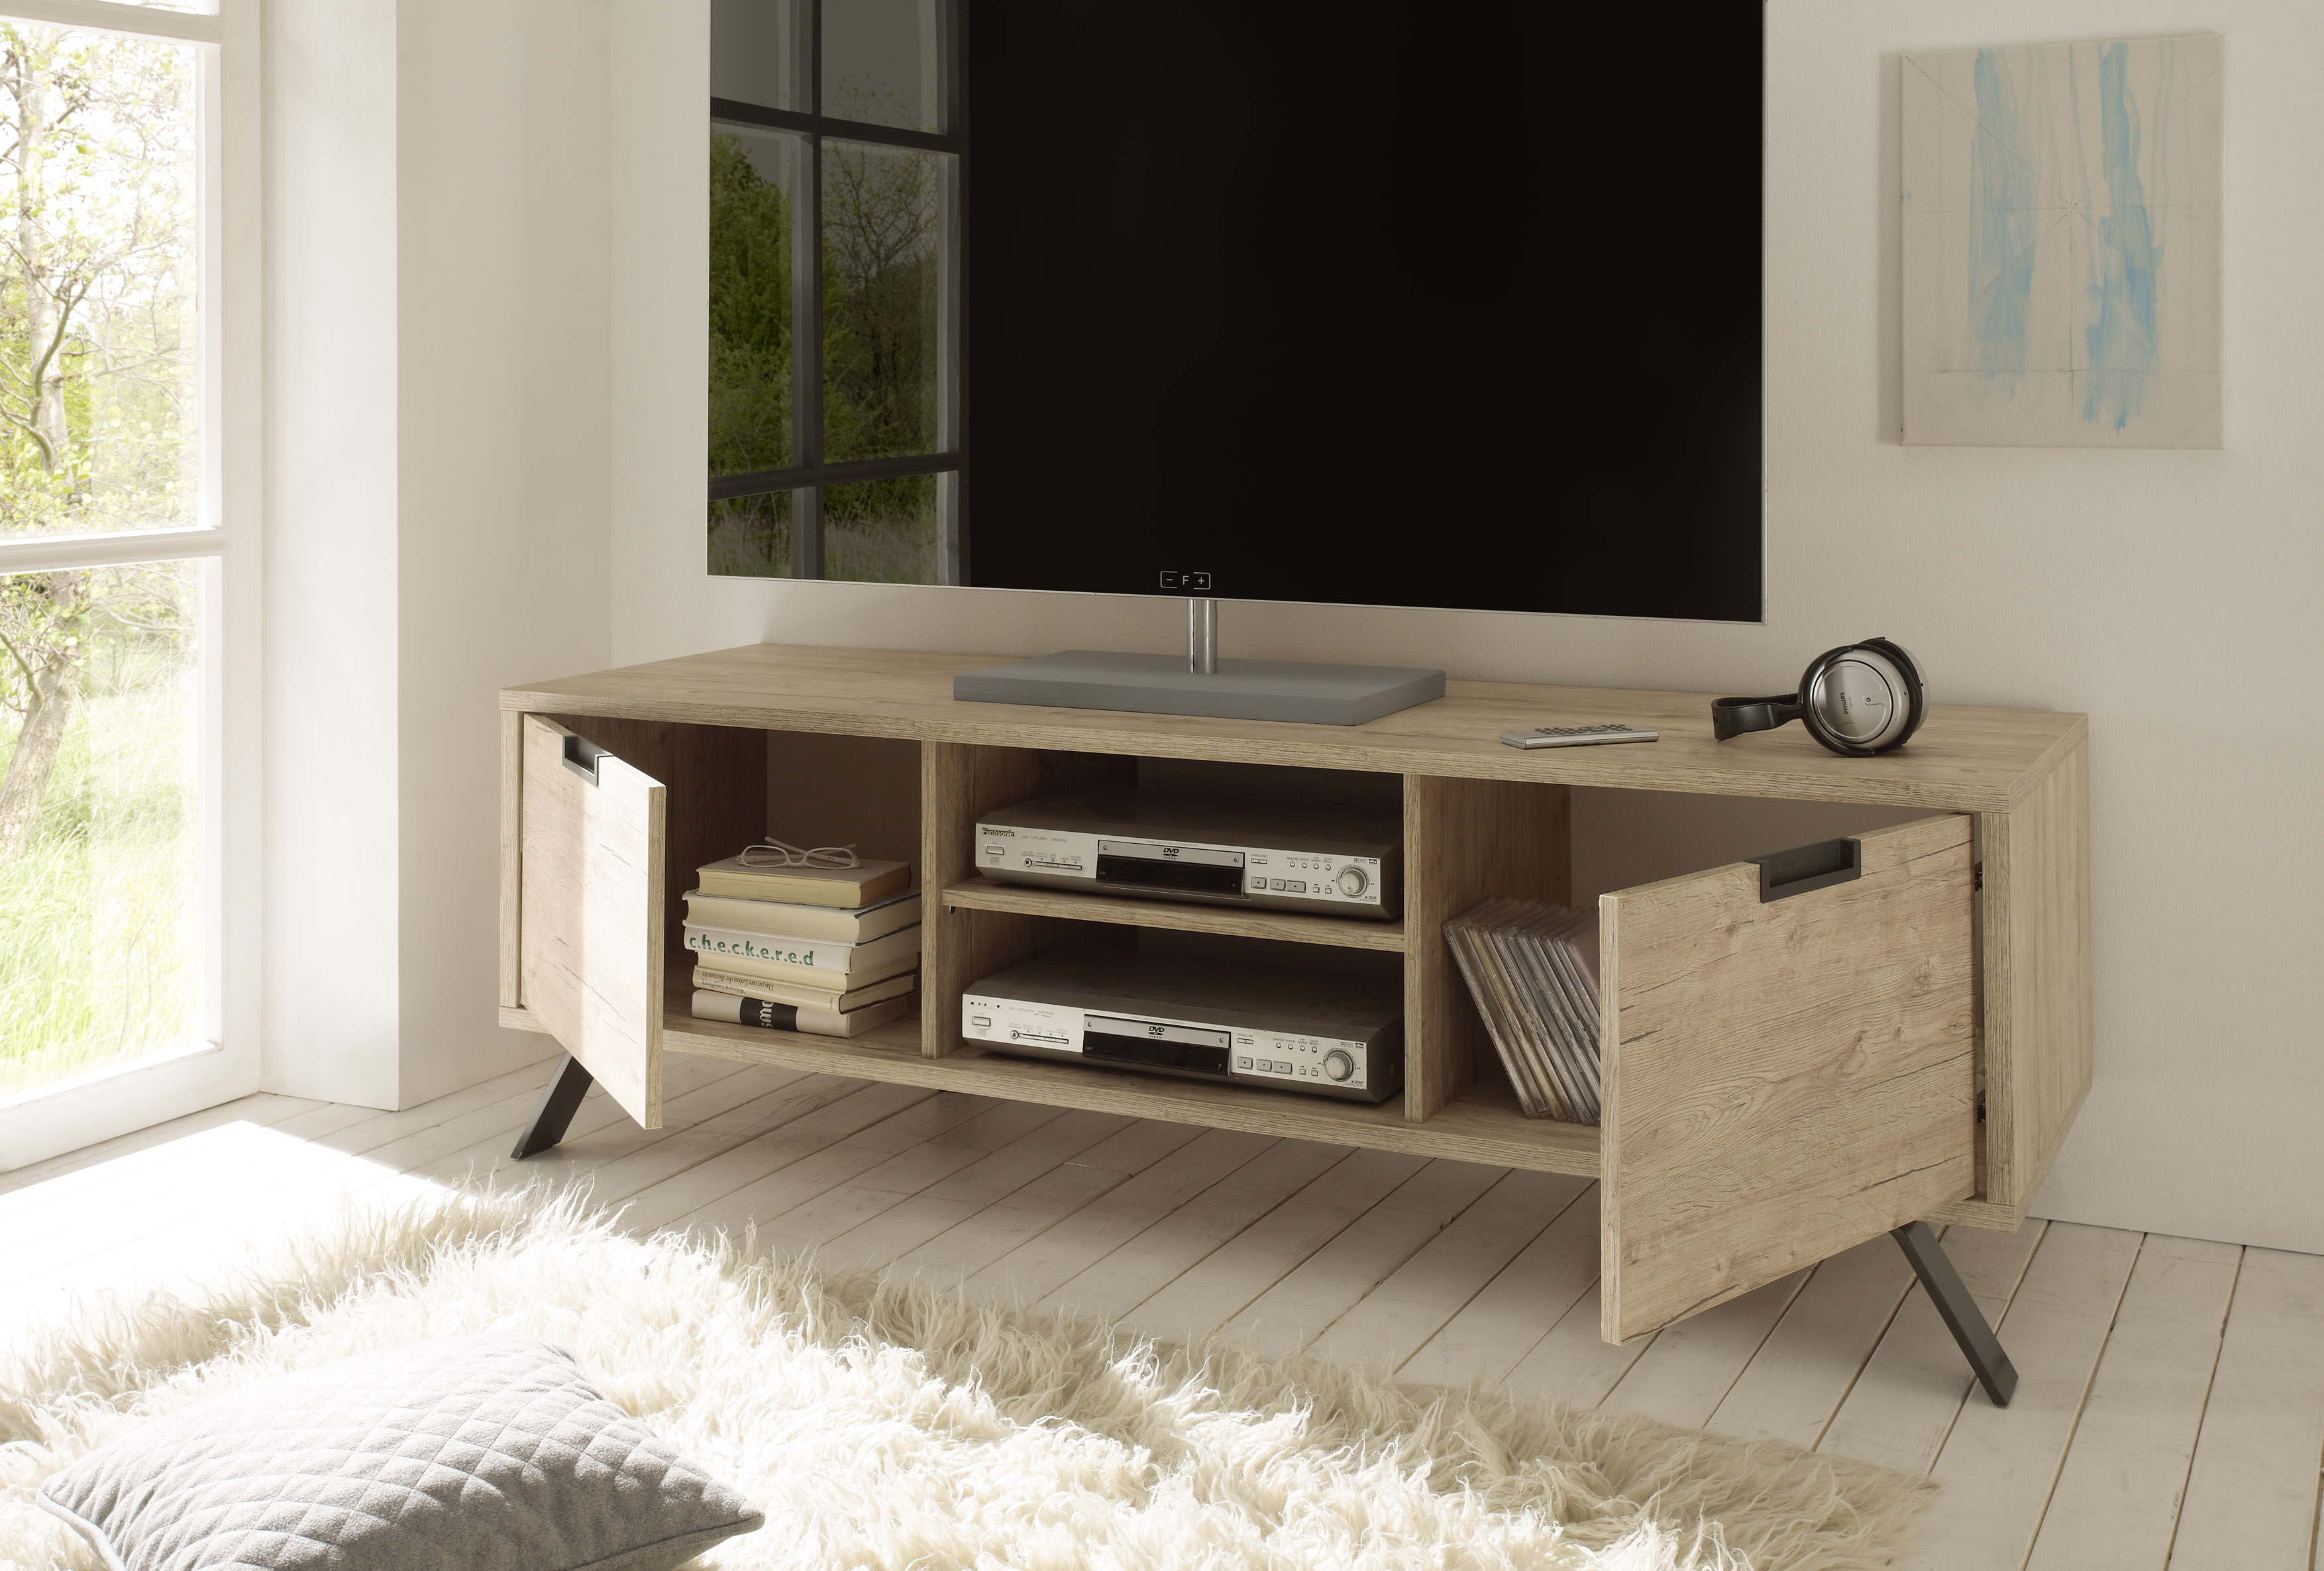 Berekening Polair Let op eiken kleurige tv meubels kopen? | meubeldeals.nl